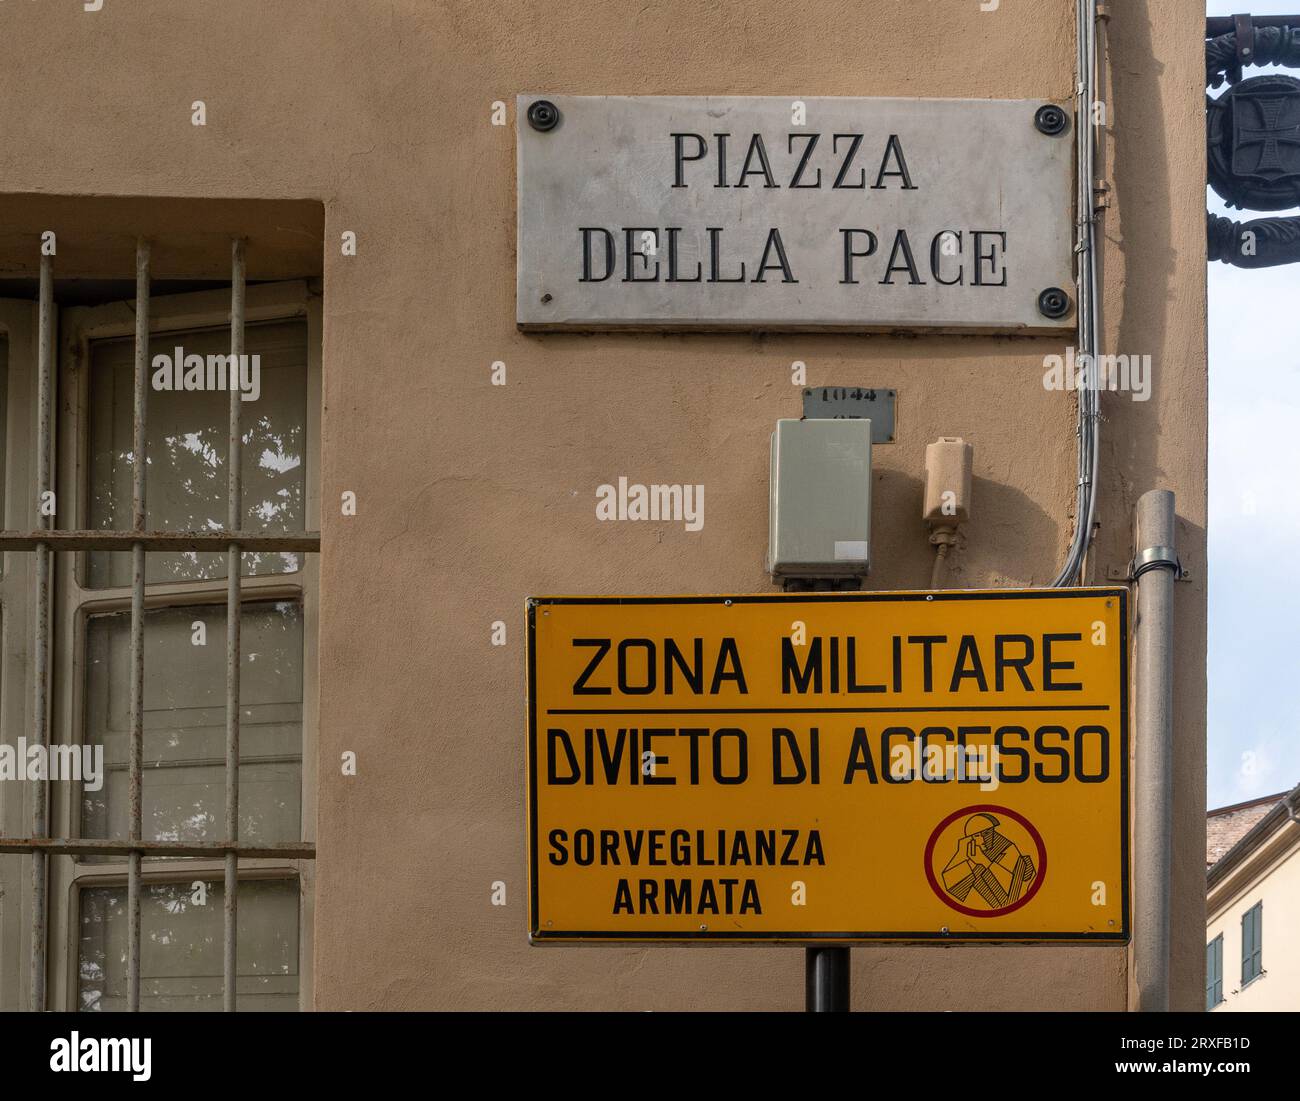 Kontrast zwischen dem Zeichen der Piazza della Pace („Friedensplatz“) und einem Schild mit der Aufschrift „Militärzone, kein Zugang, bewaffnete Überwachung“, Parma, Italien Stockfoto